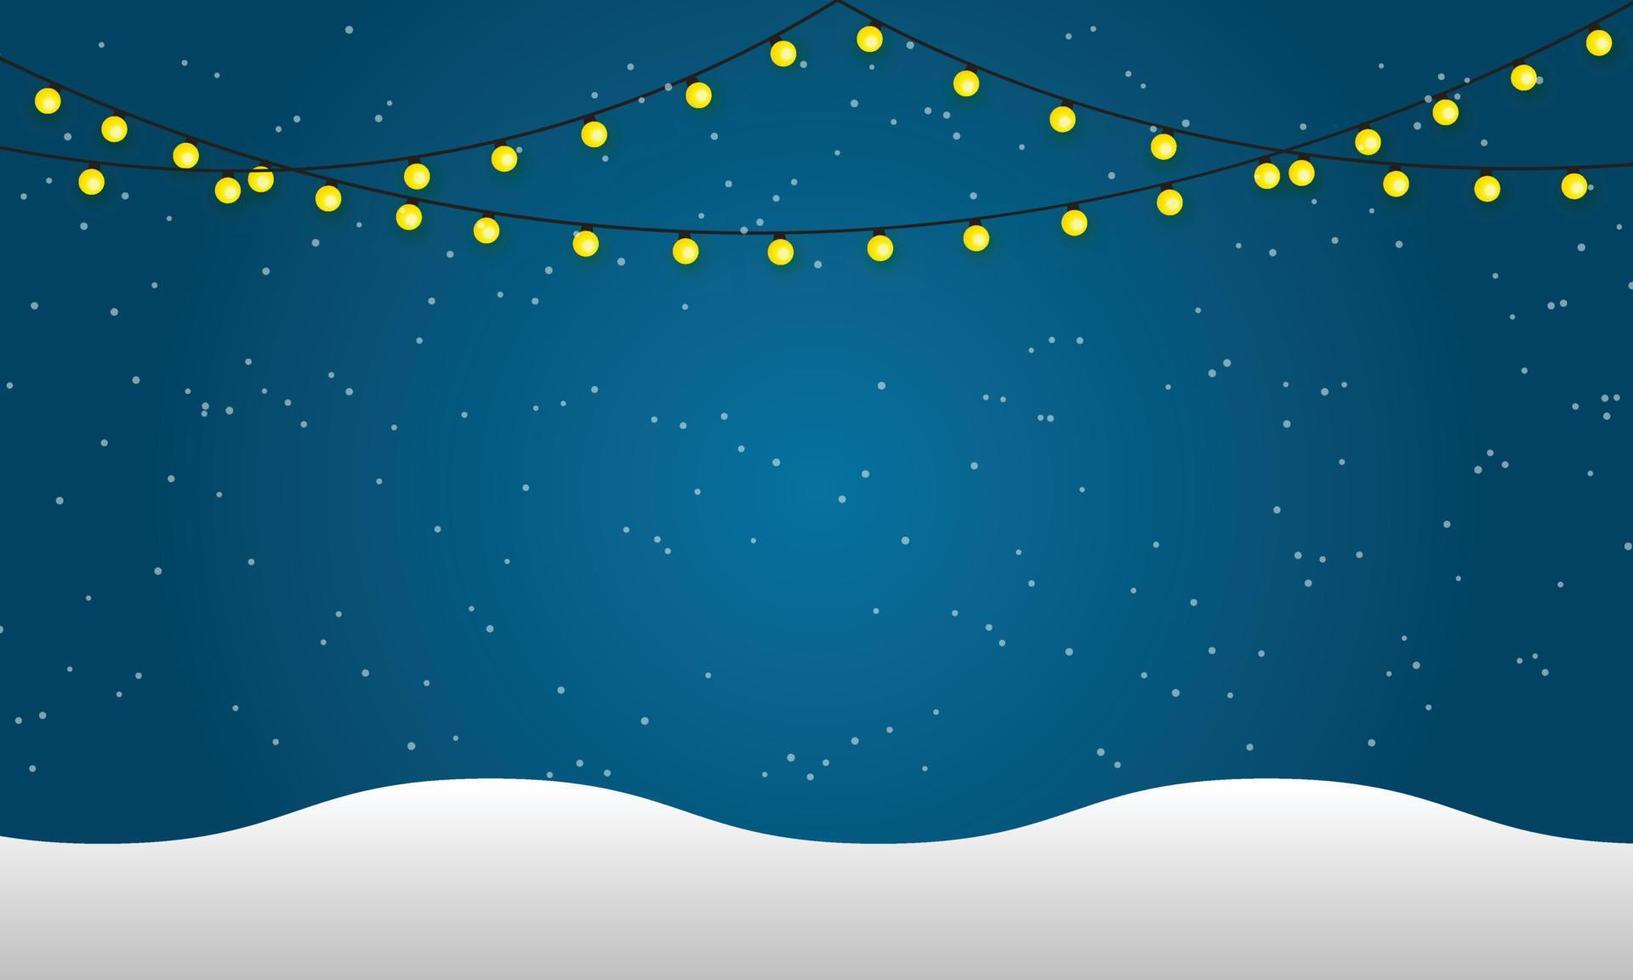 design de fundo de natal da corda de luzes e floco de neve com neve caindo na ilustração vetorial de inverno vetor